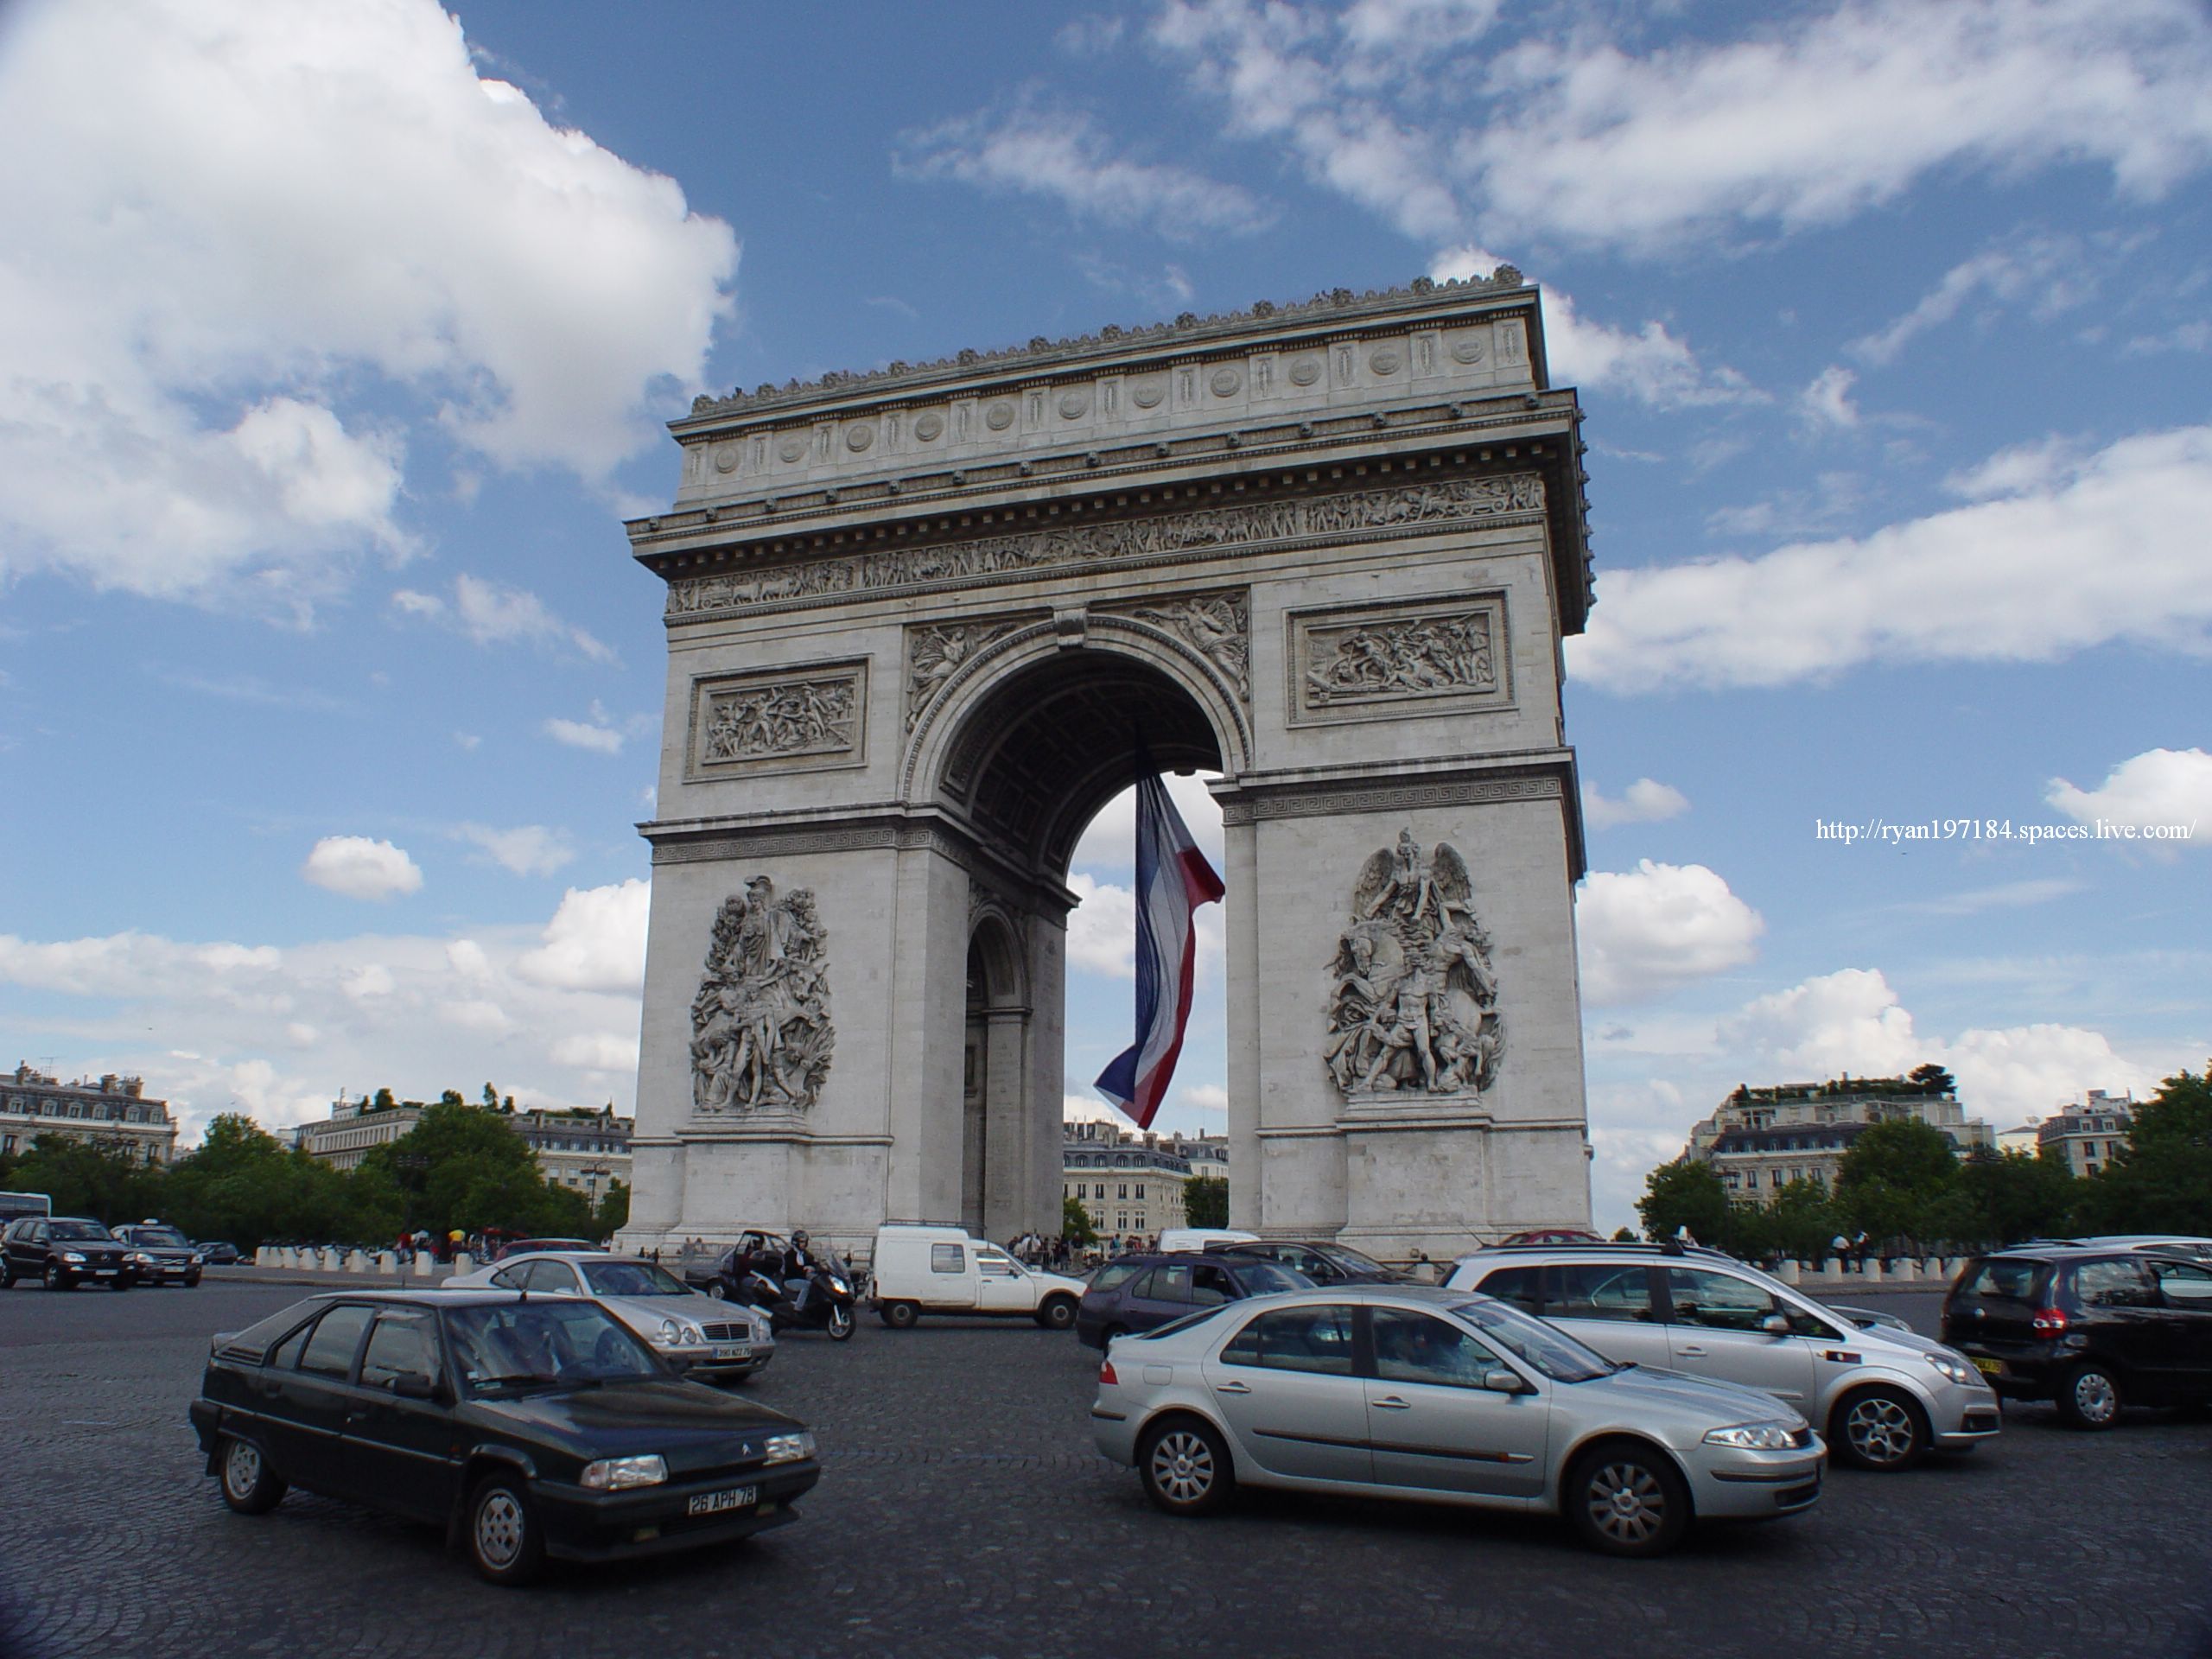 全球最多外国观光客排行榜 法国第一